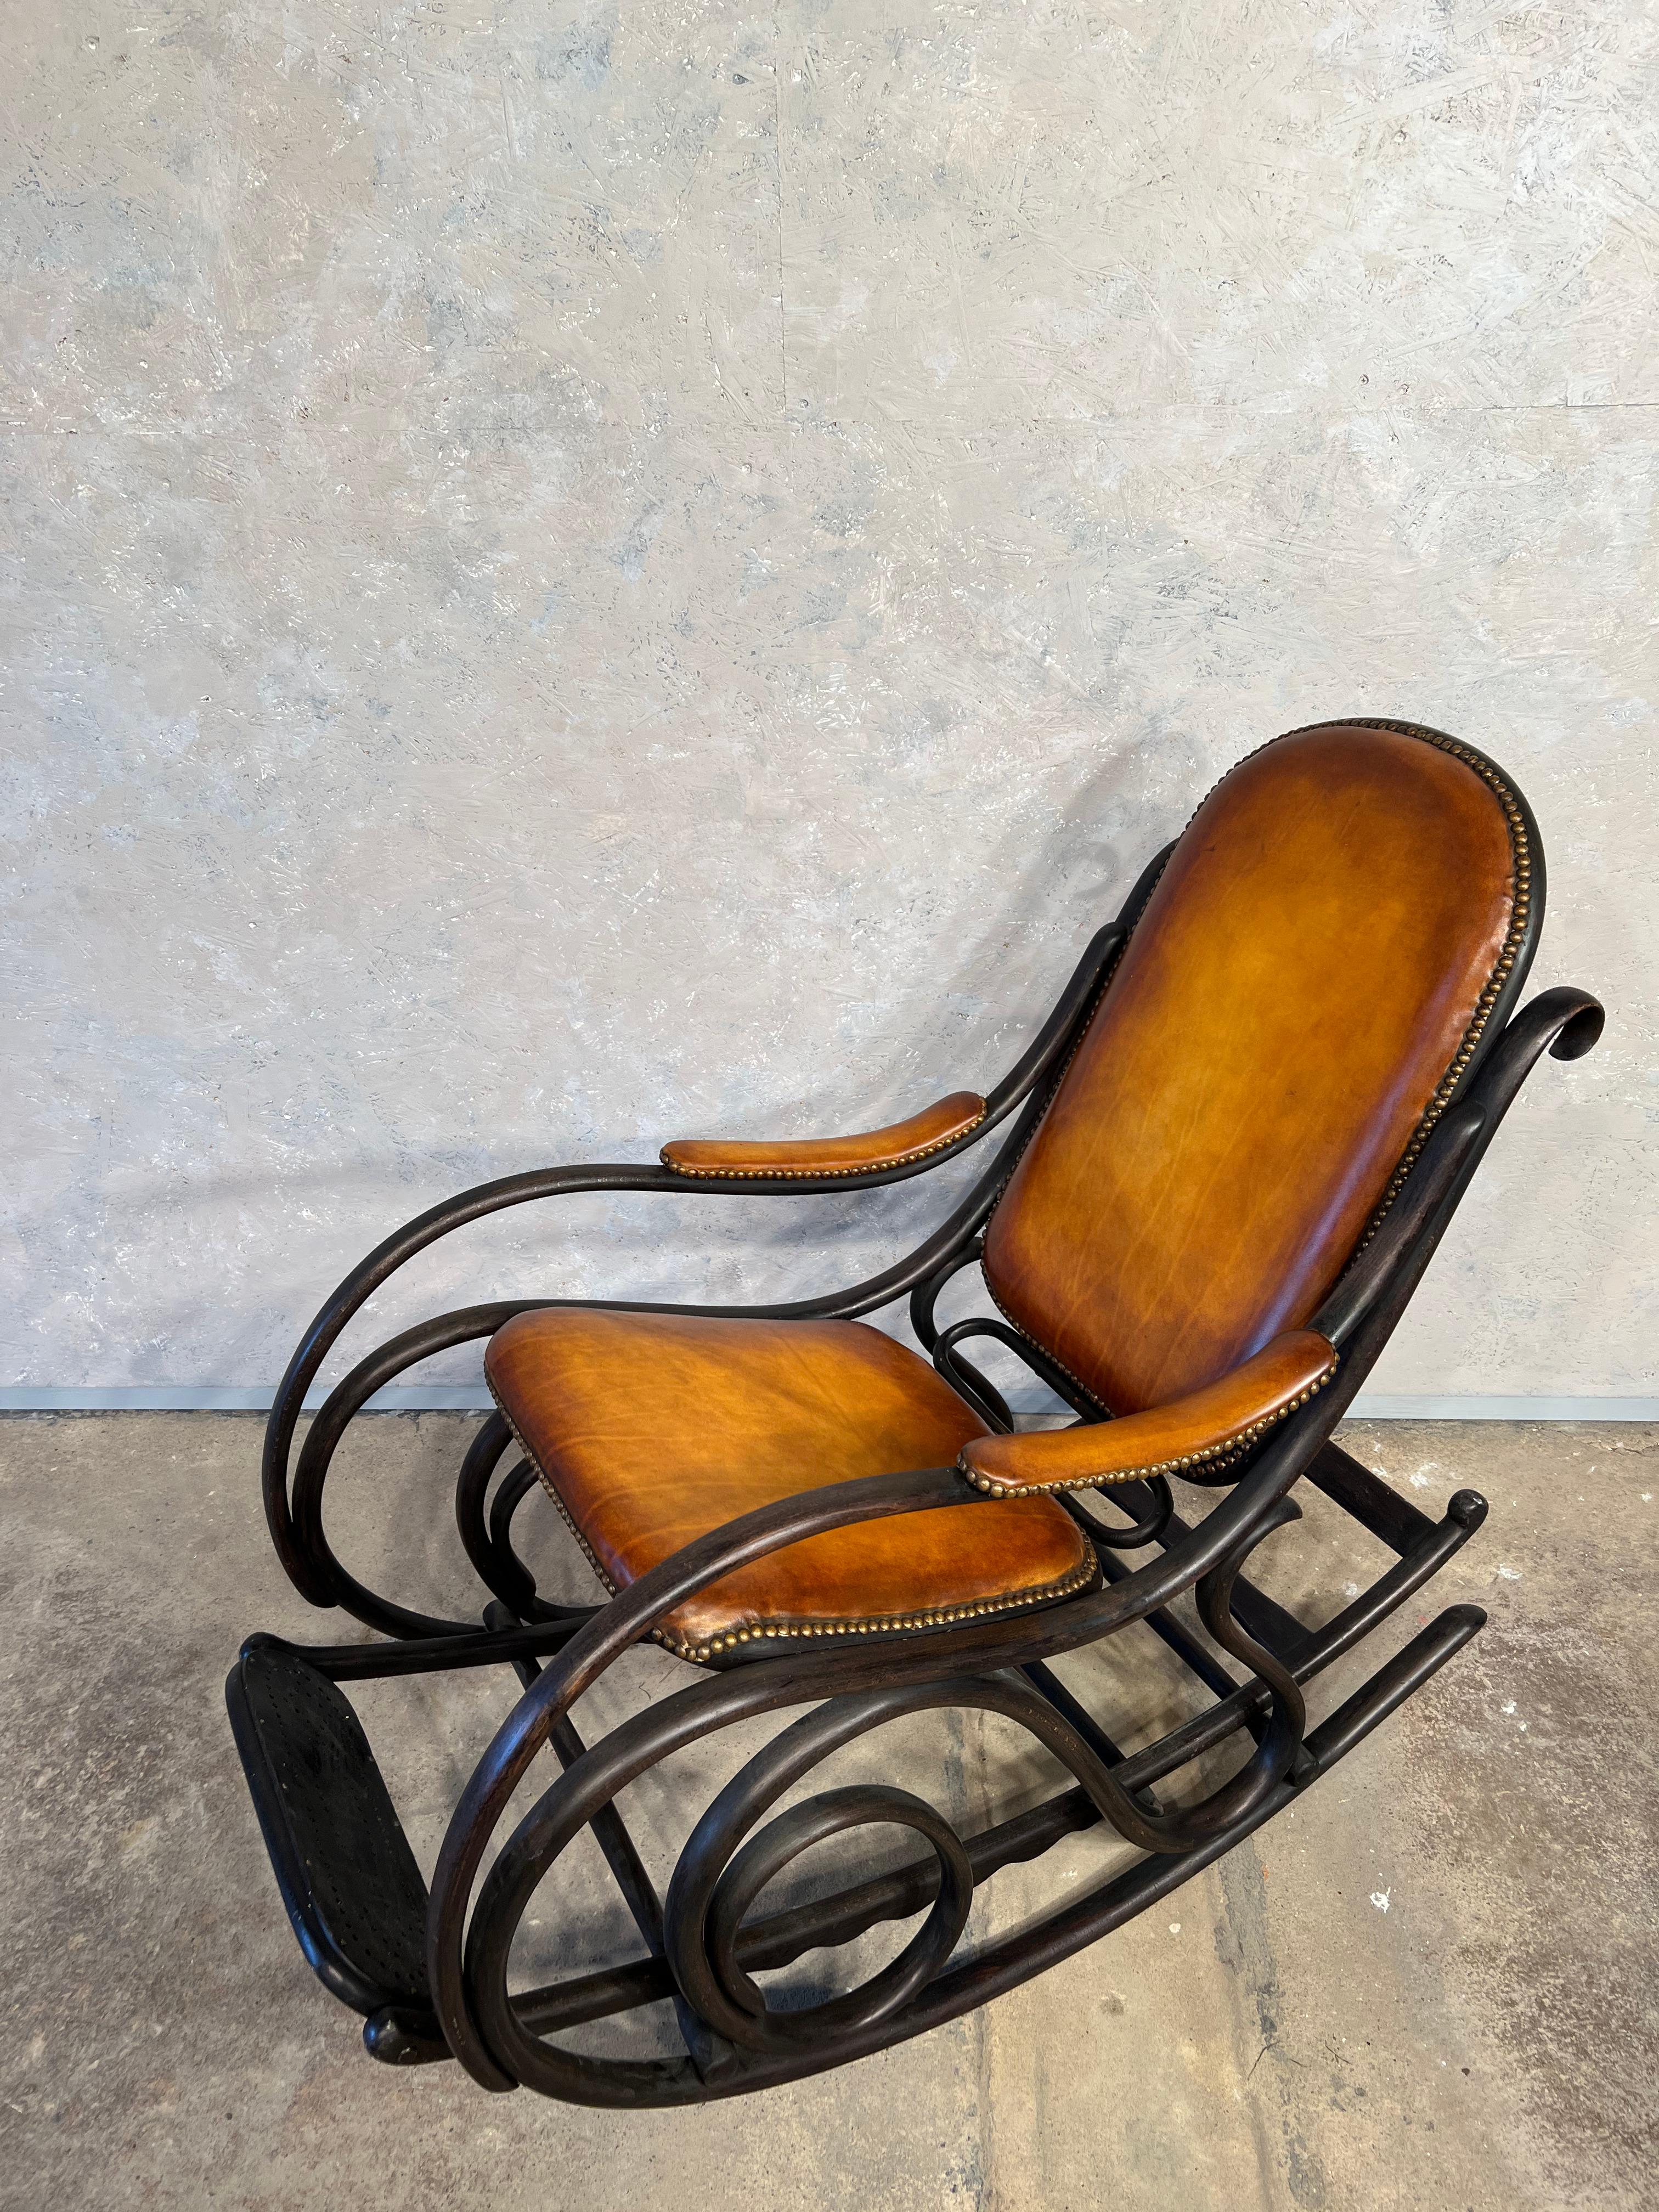 Chaise à bascule, originale du début de l'Art Nouveau 1900, avec cadre en hêtre courbé et ébénisé, assise, dossier et accoudoirs tapissés.

Restauré et retapissé en cuir d'excellente facture dans une couleur fauve patinée, le contraste est